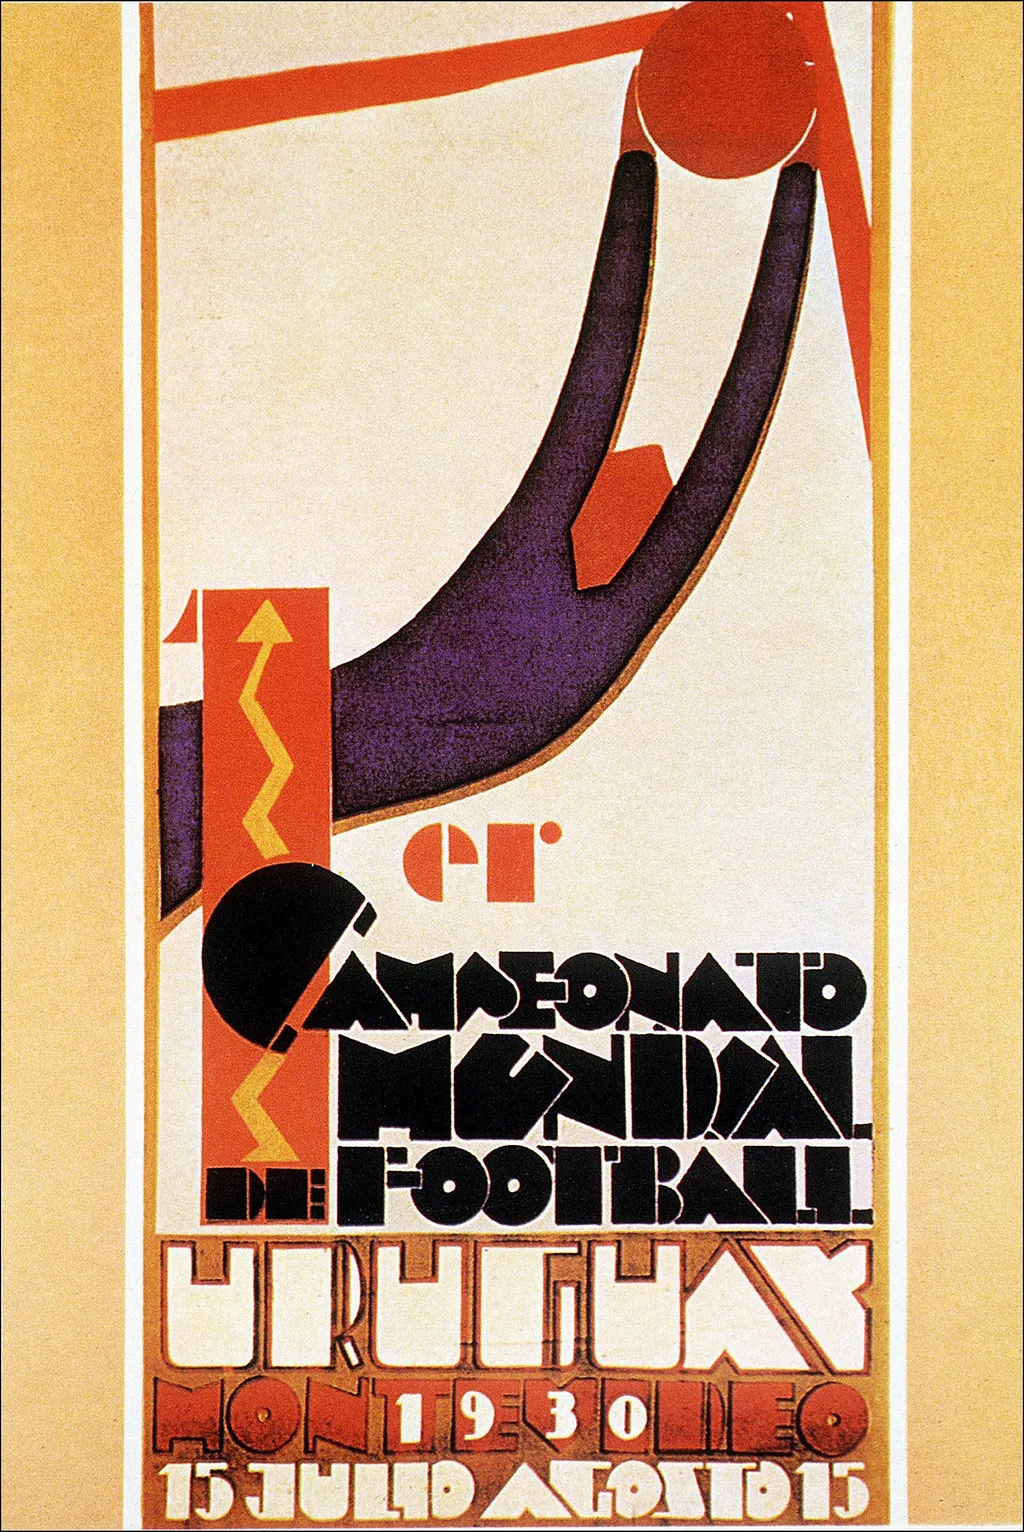 Labdarúgó-világbajnokság, labdarúgóvébé, futballvébé, labdarúgás, hivatalos plakát, poszter, 1930, Uruguay 